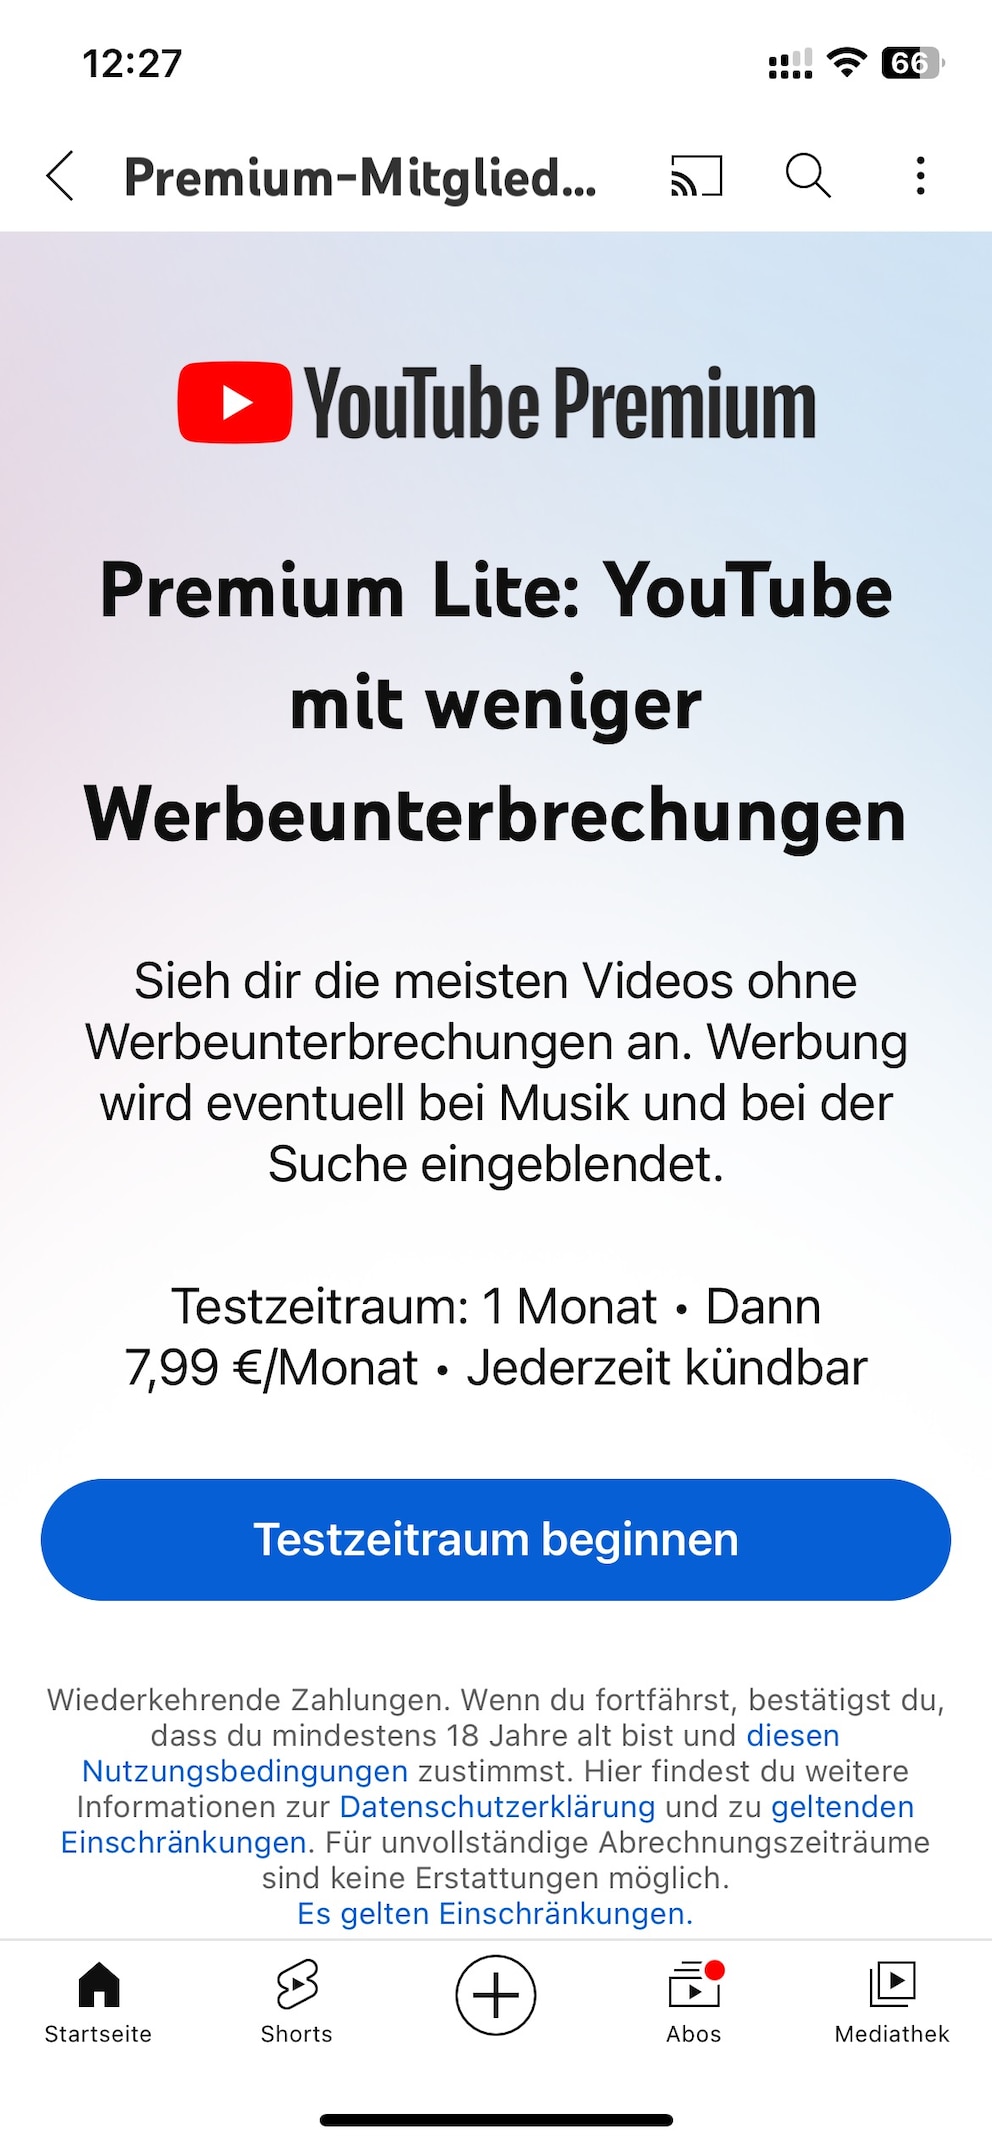 YouTube Premium Lite buchen – auf dem iPhone kein Problem.